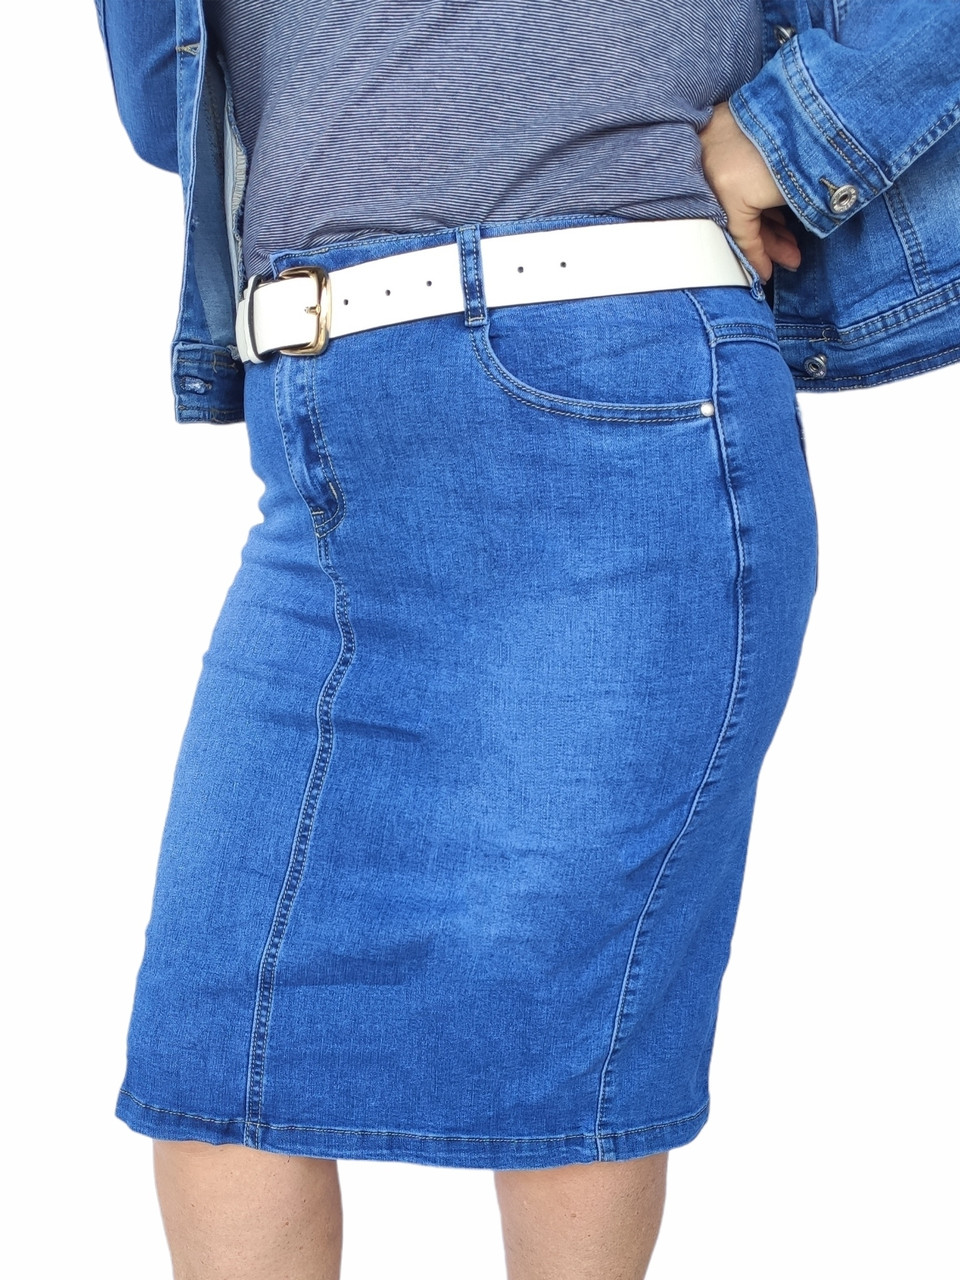 Спідниця жіноча джинсова стрейчева блакитна нижче коліна